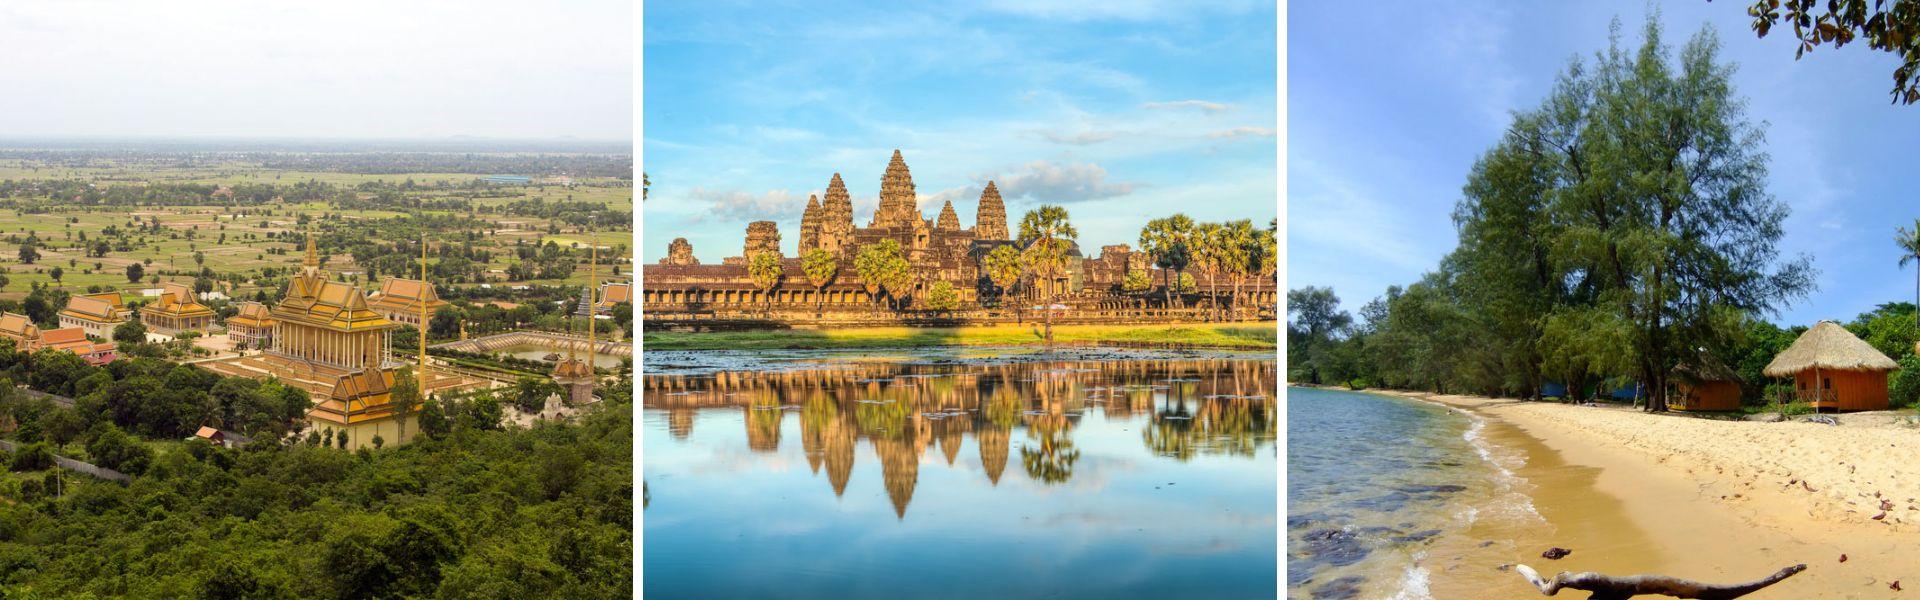 Itinerario di 2 settimane in Cambogia